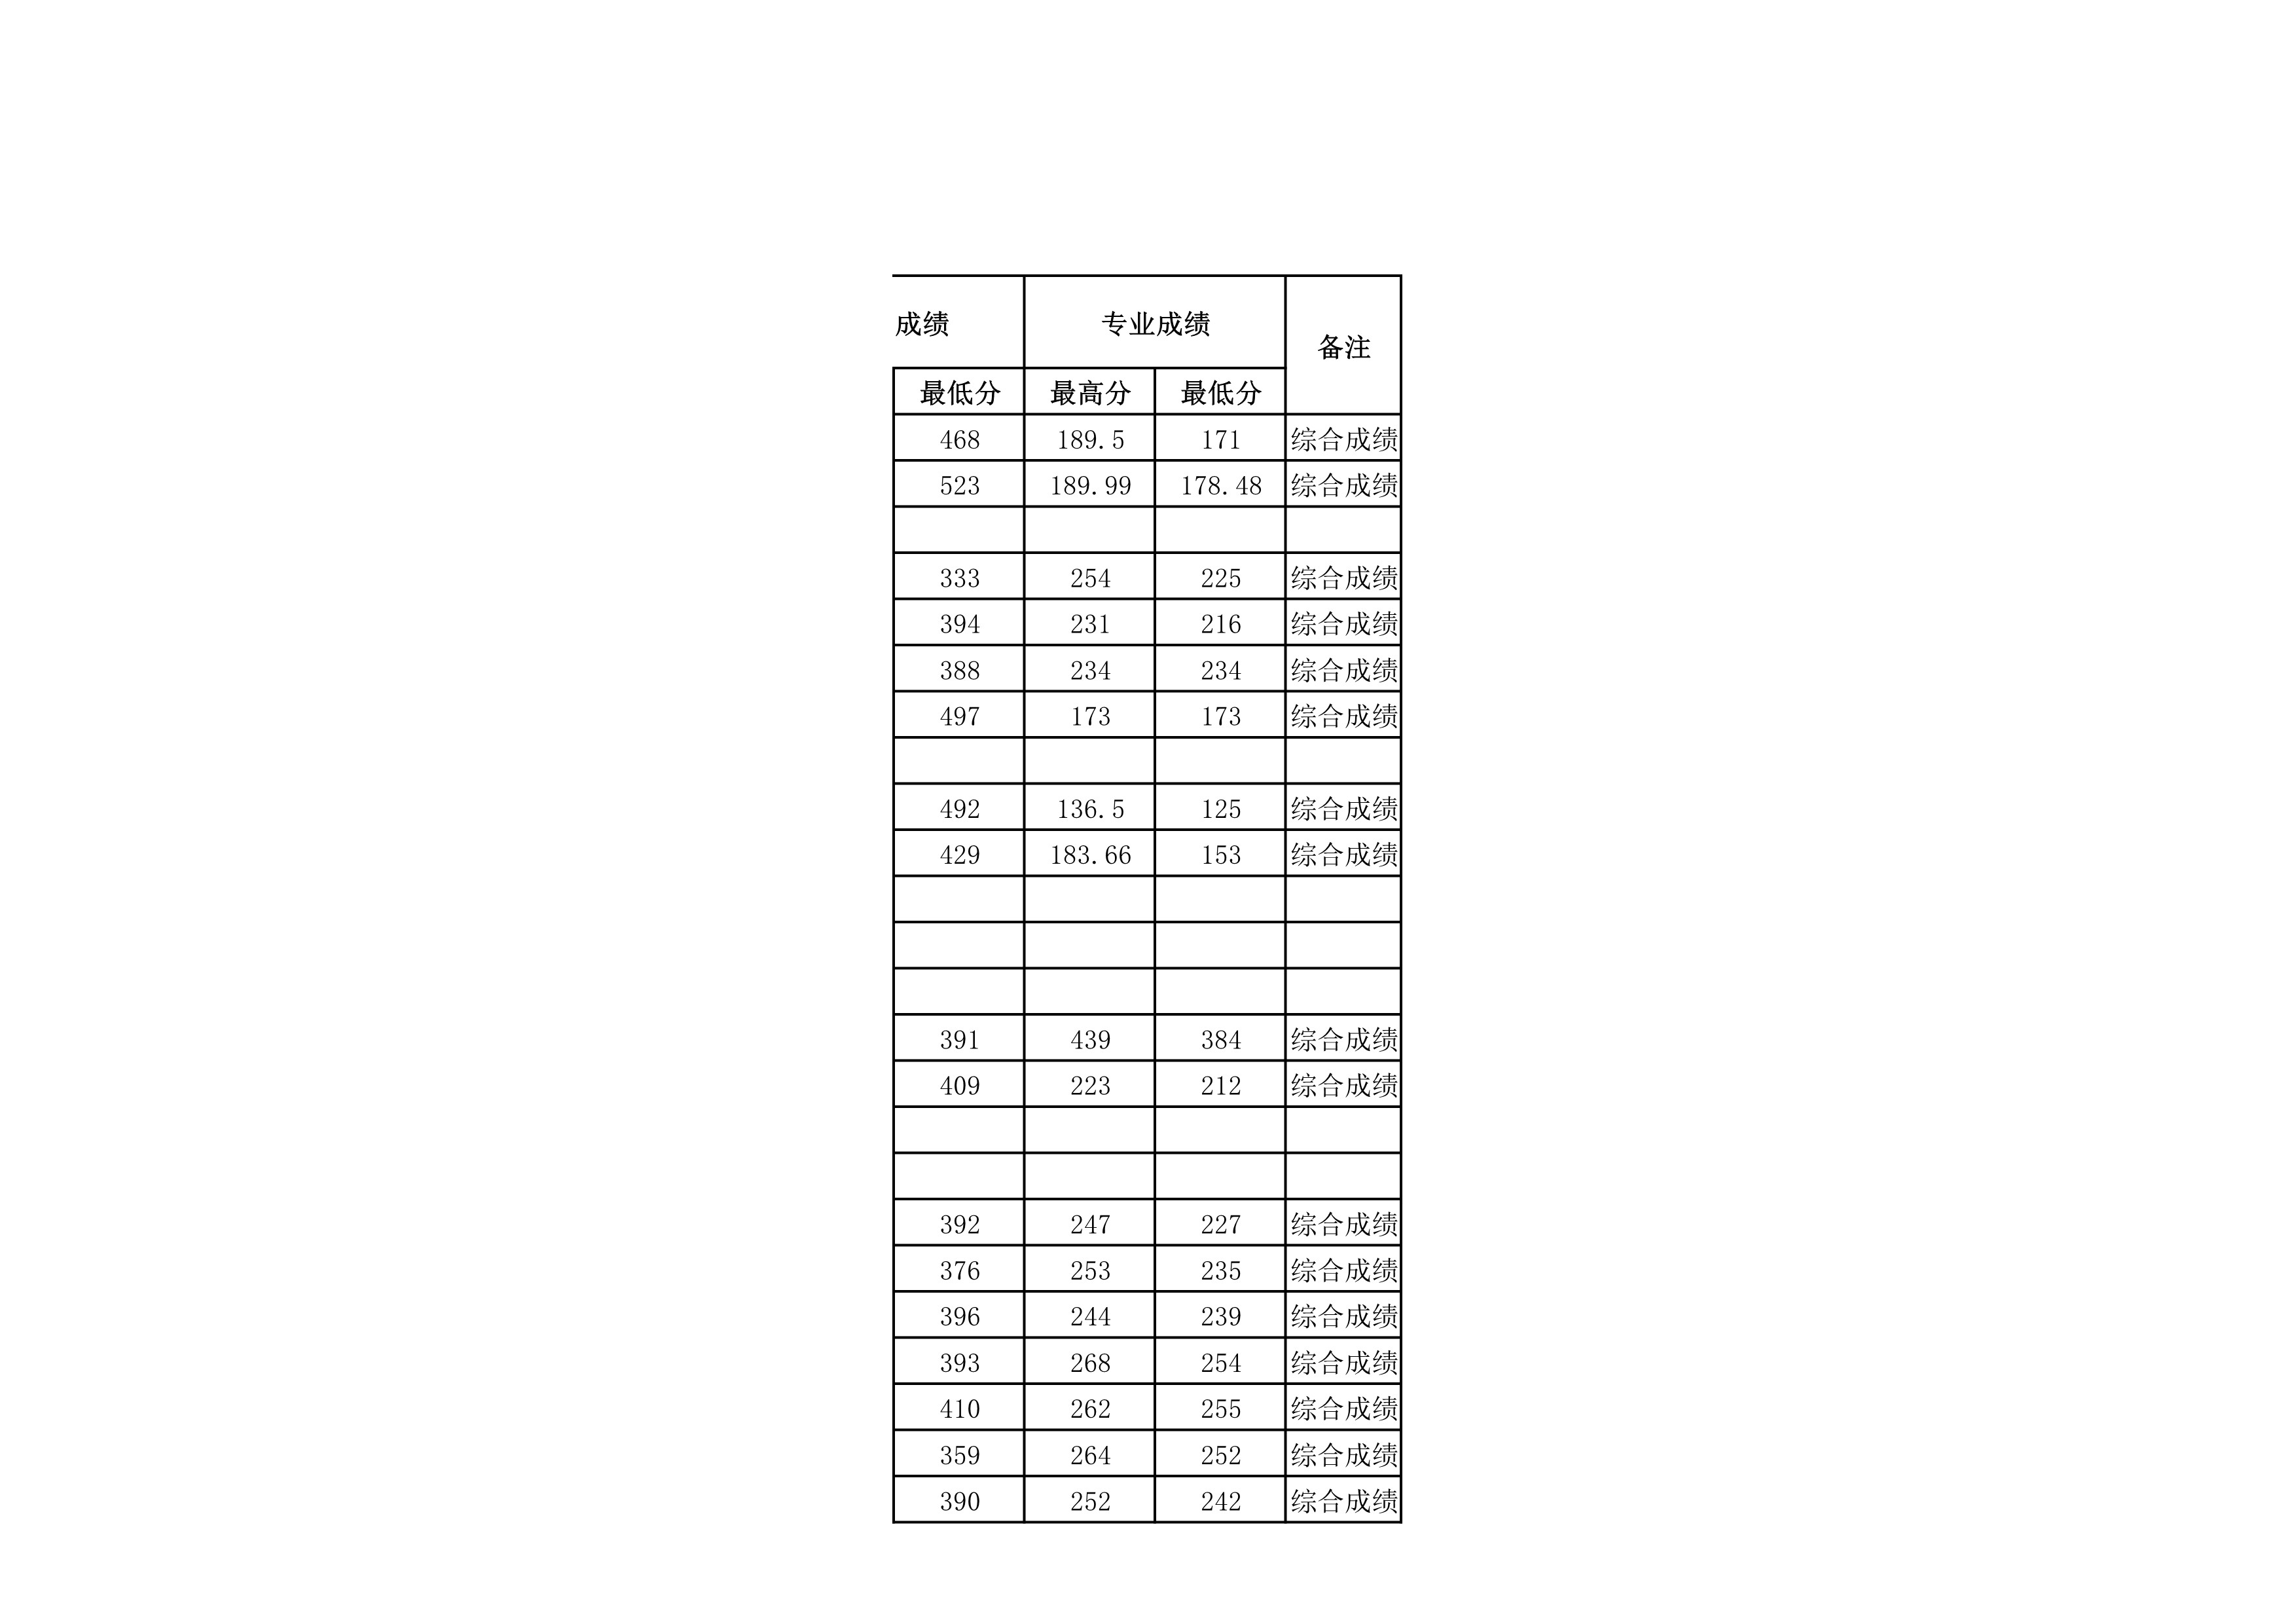 贵州民族大学2021年省外录取分数情况统计表_20220414154148_7.jpg